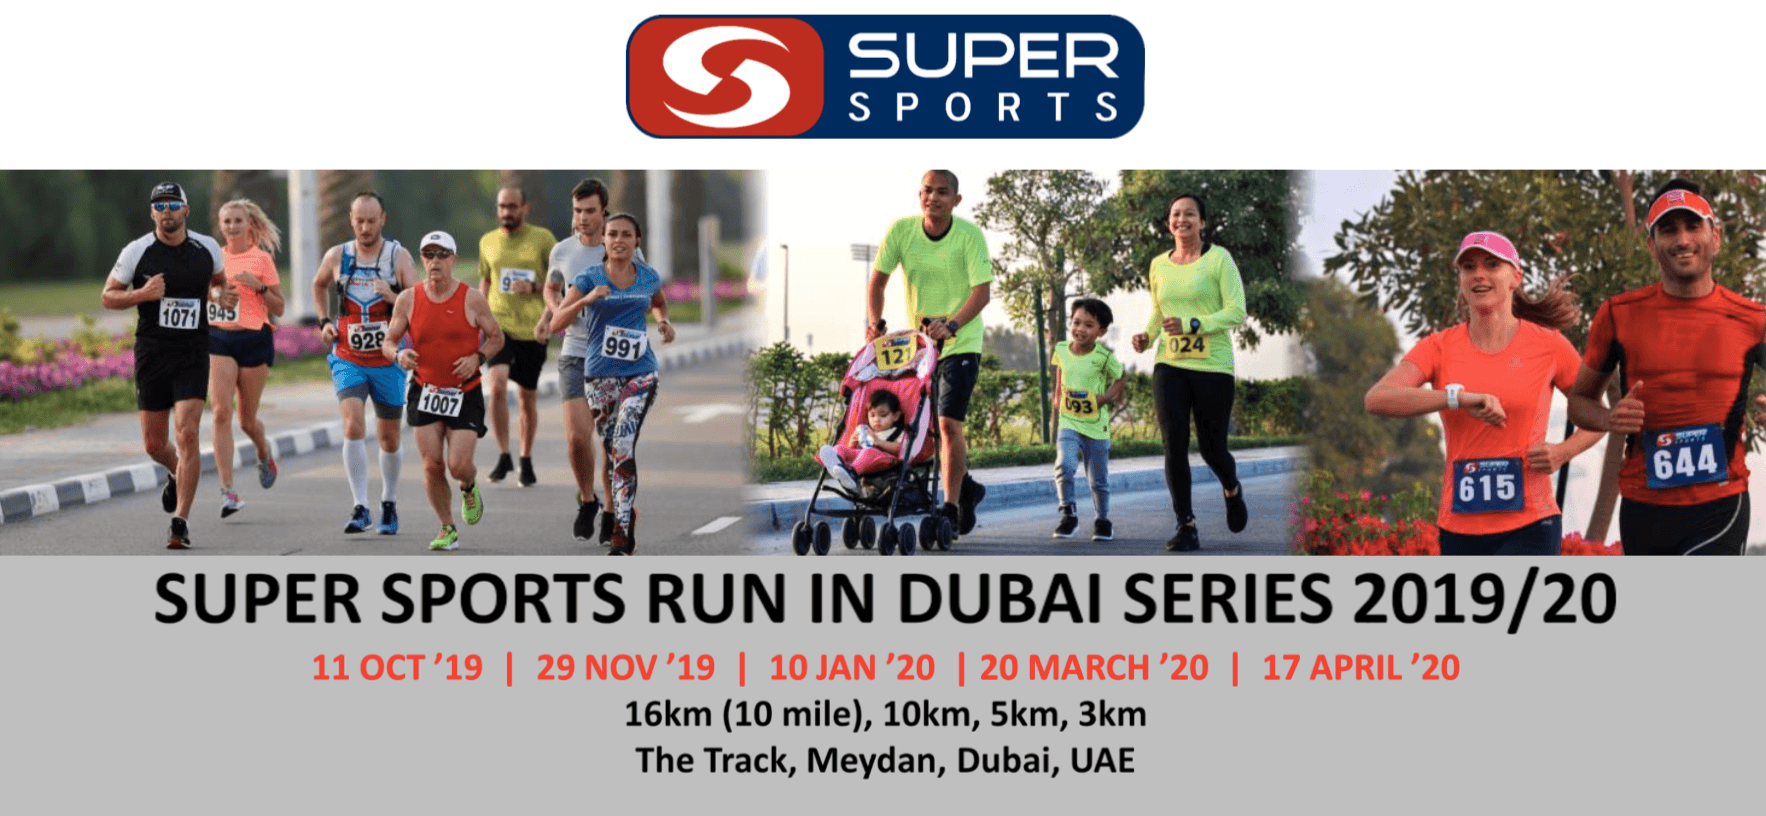 Super Sports 10 Miler - Coming Soon in UAE